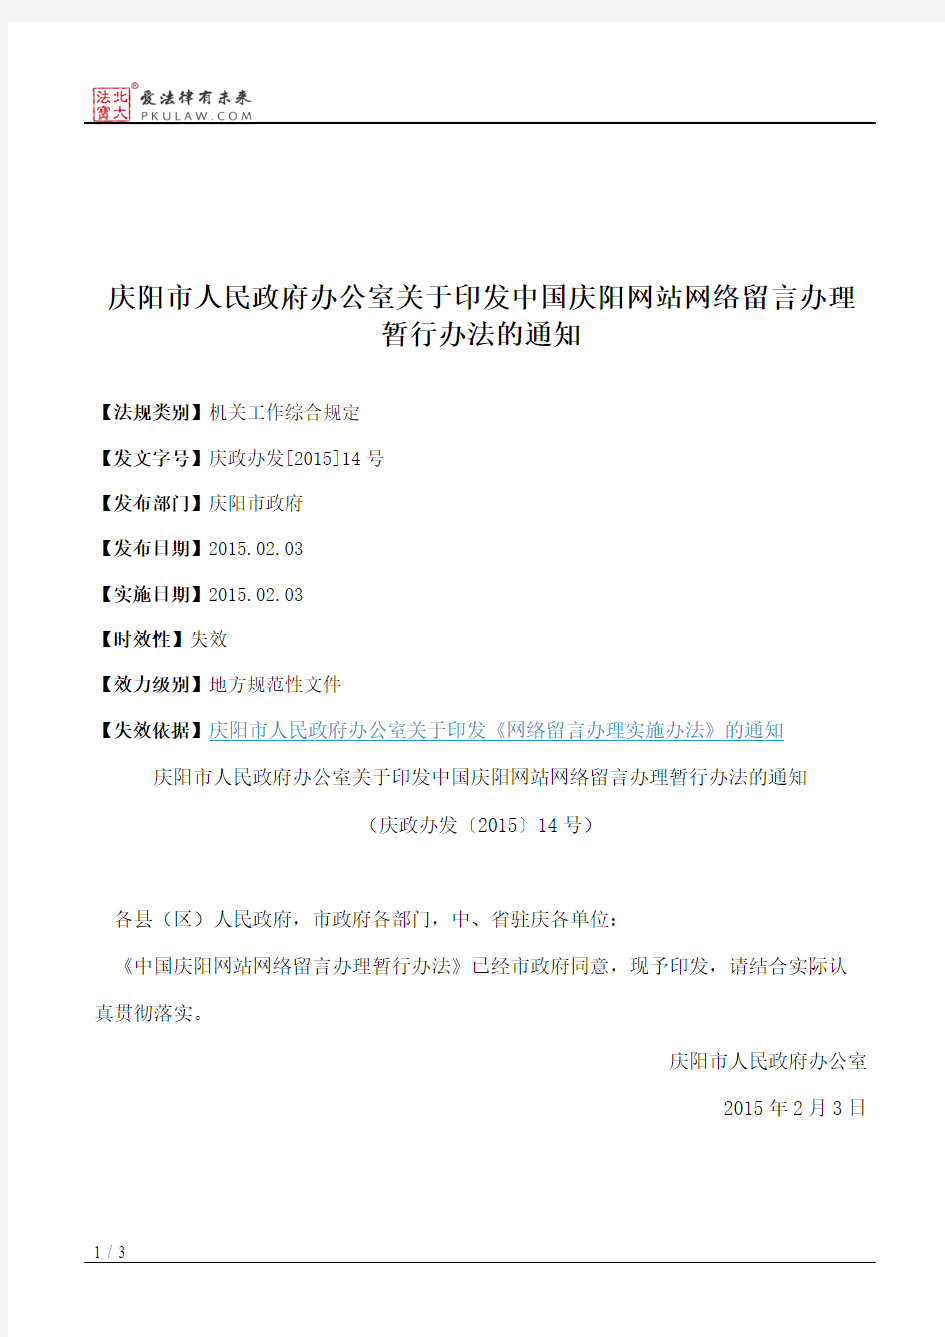 庆阳市人民政府办公室关于印发中国庆阳网站网络留言办理暂行办法的通知